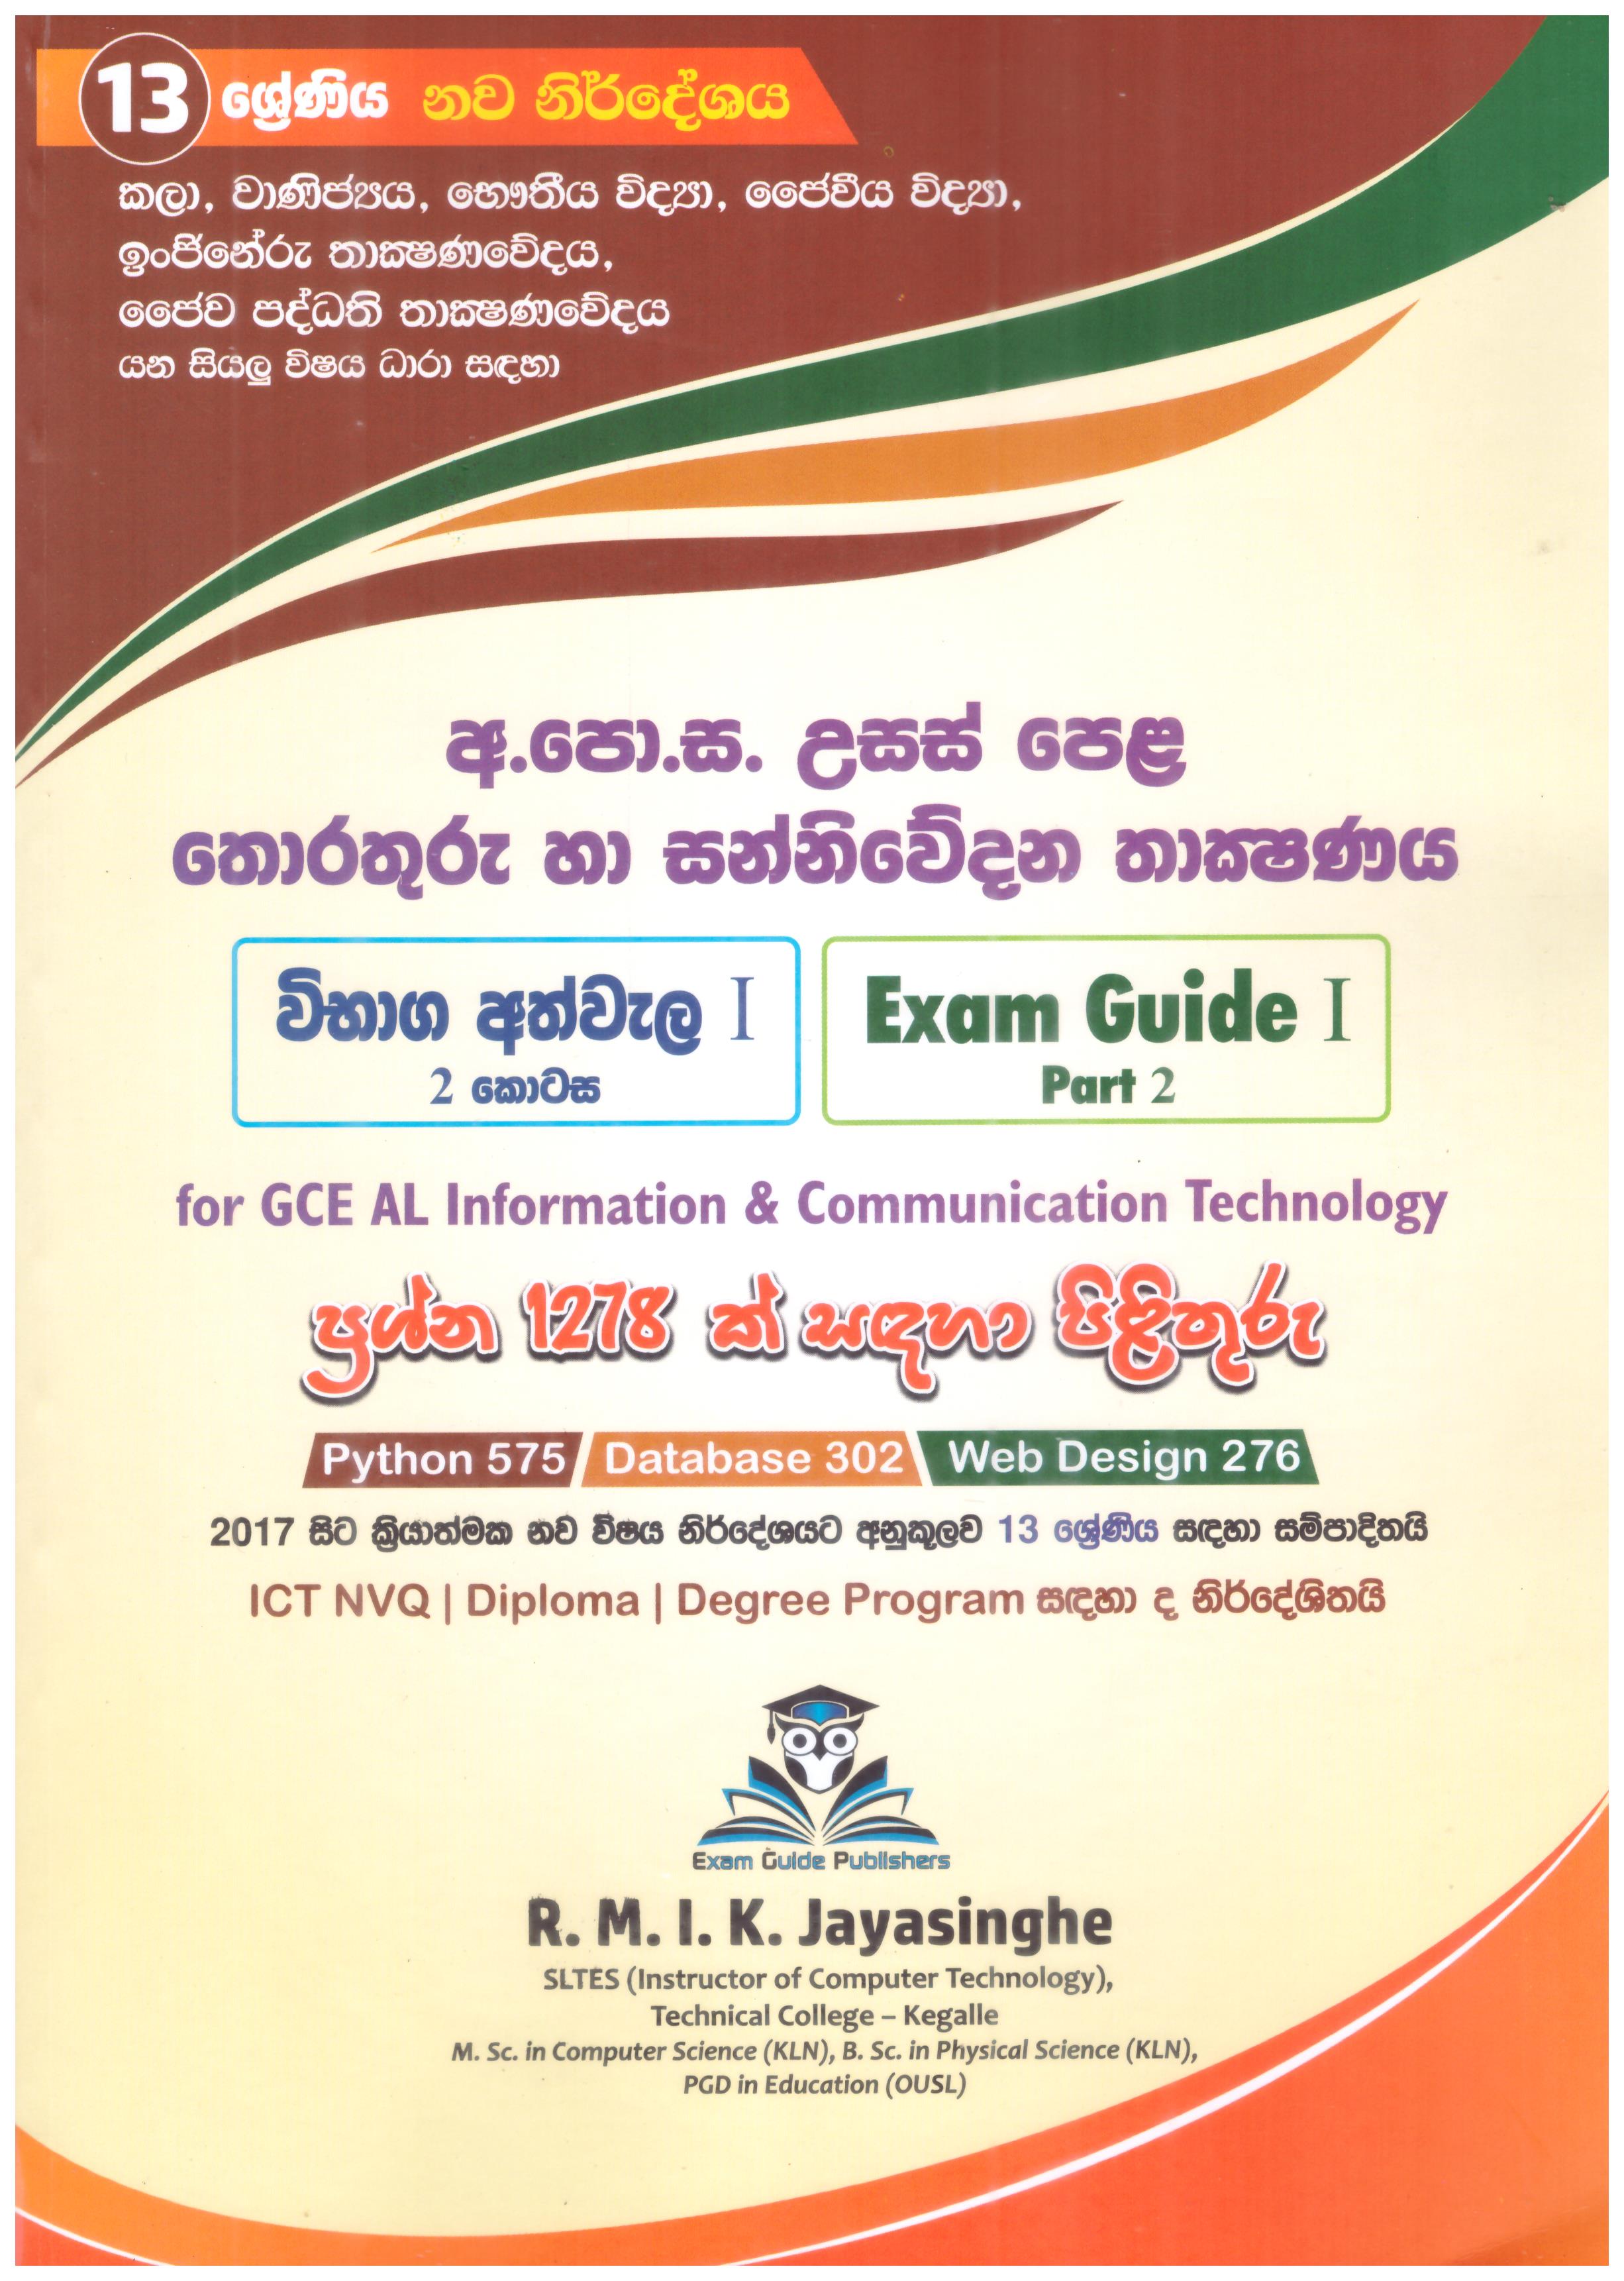 G.C.E. O/L Viyapara Ha Ginumkarana Adhyanaya 10 ha 11 Shreniya Adarsha Prasnoththara Sangrahaya